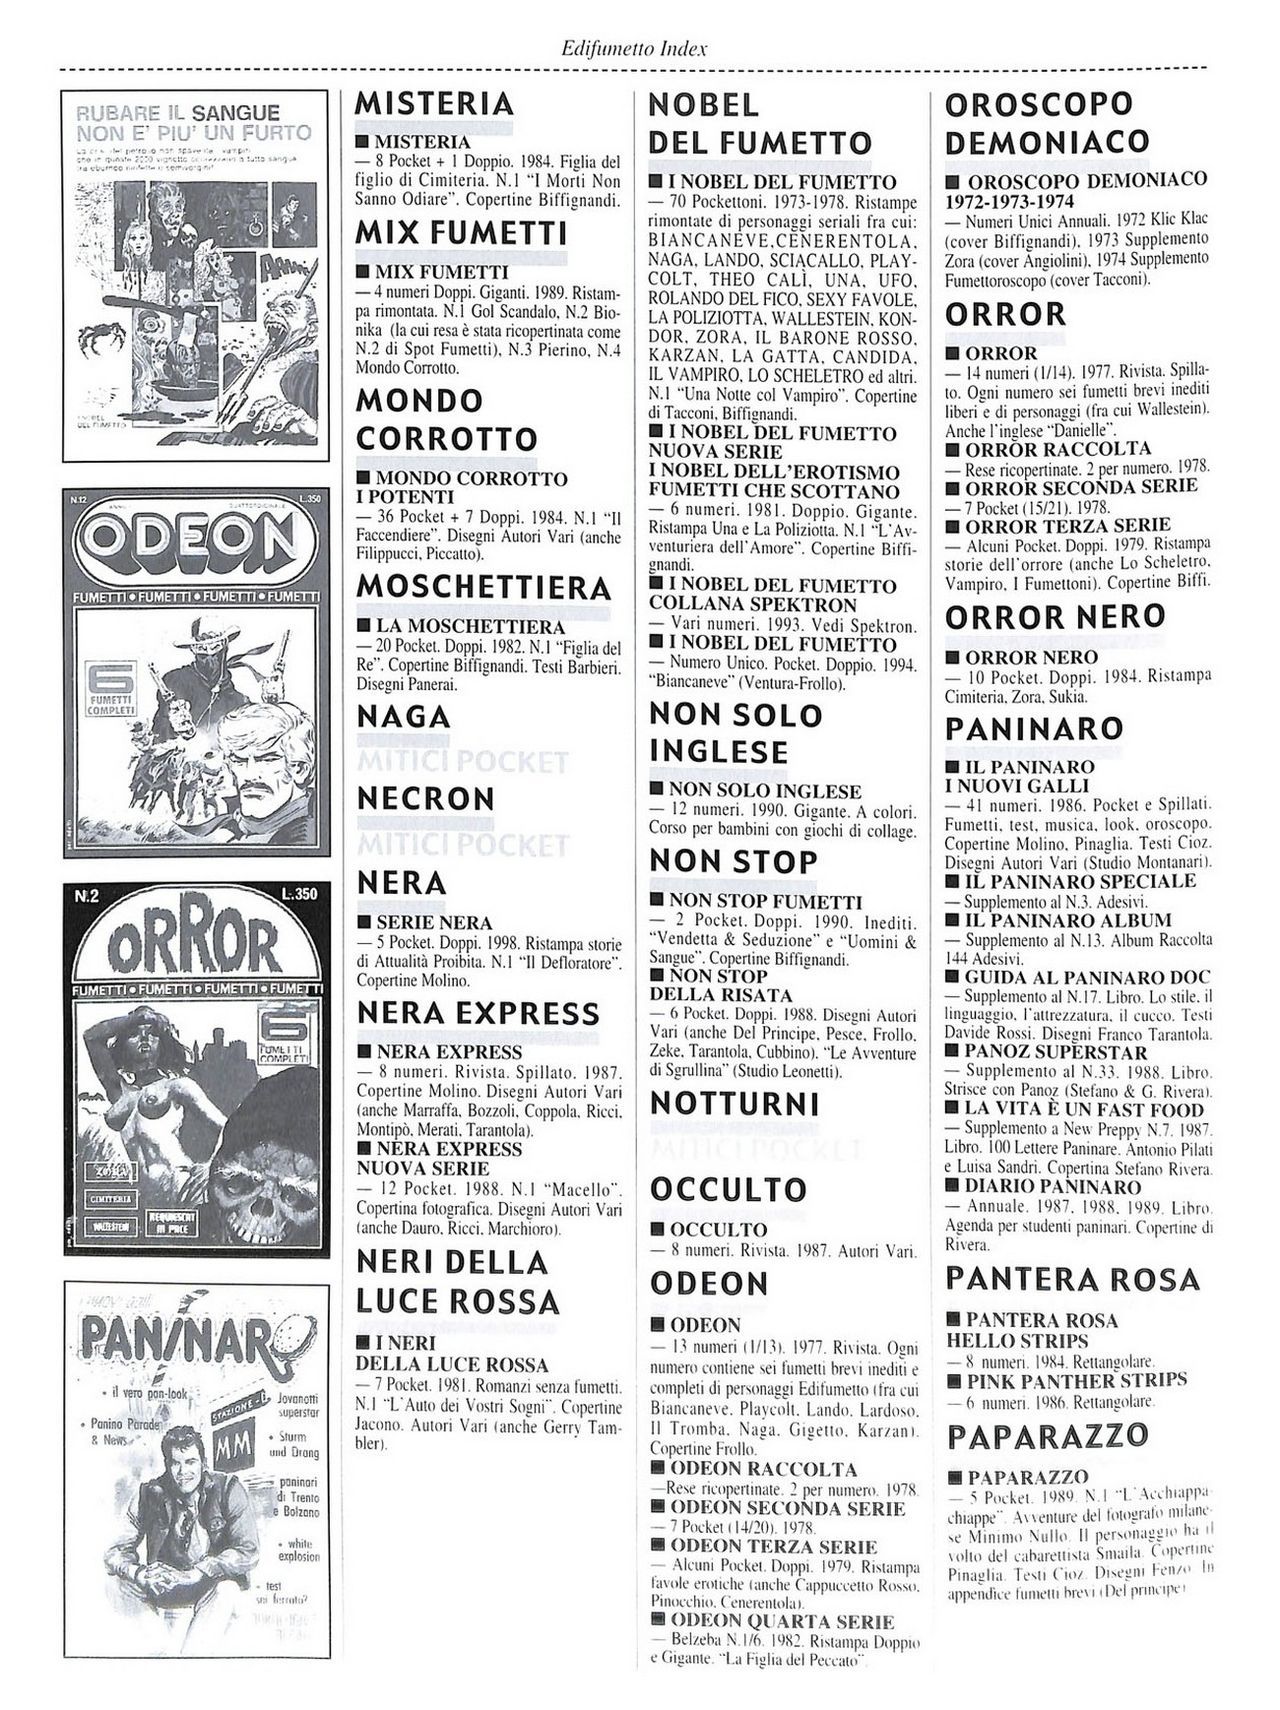 EdiFumetto index (Graziano Origa, 2002) [Italian] 85